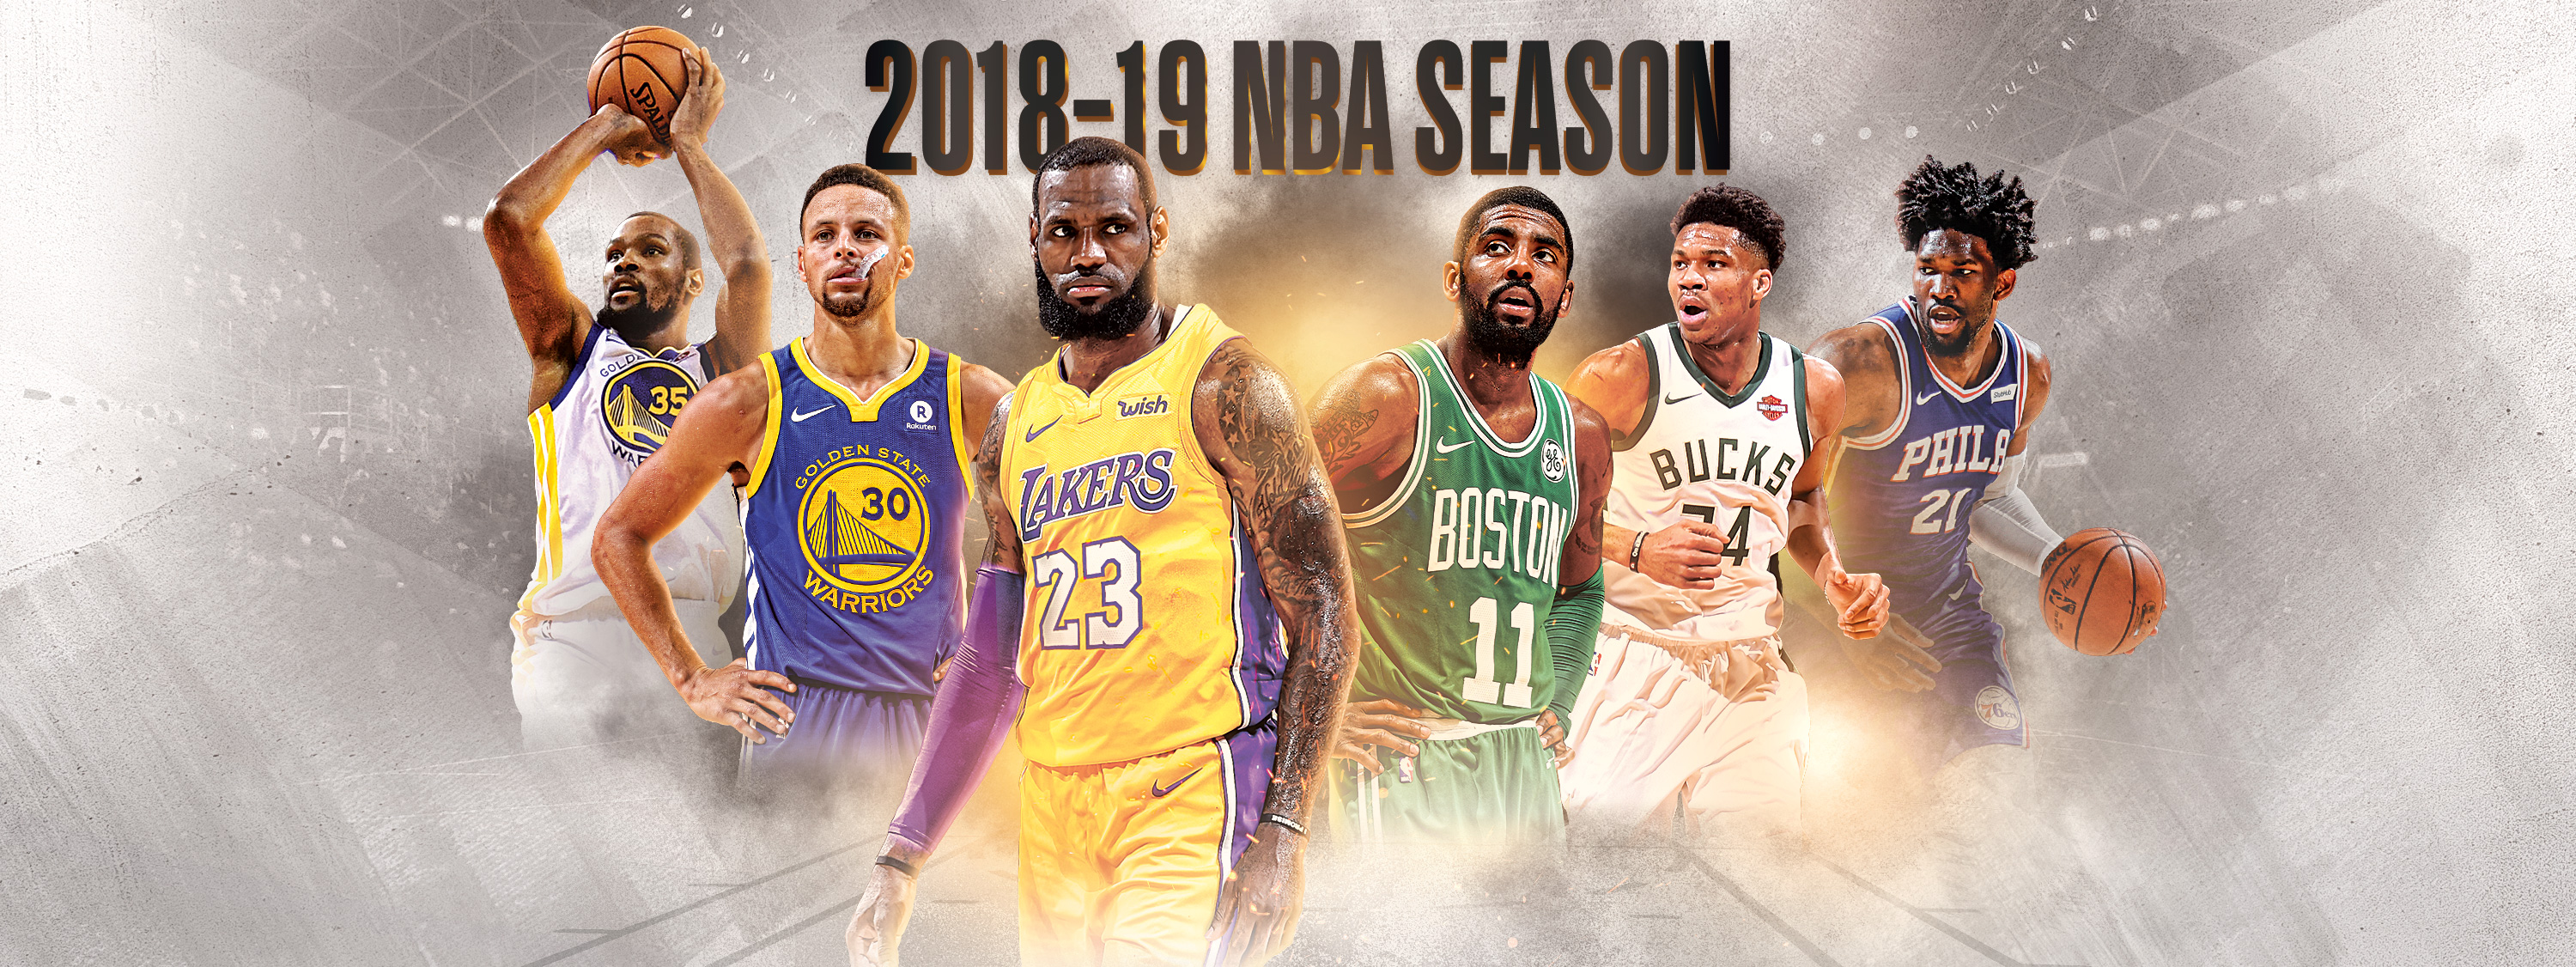 NBA 2018-2019: favoritos, datos, historia y curiosidades Deporadictos